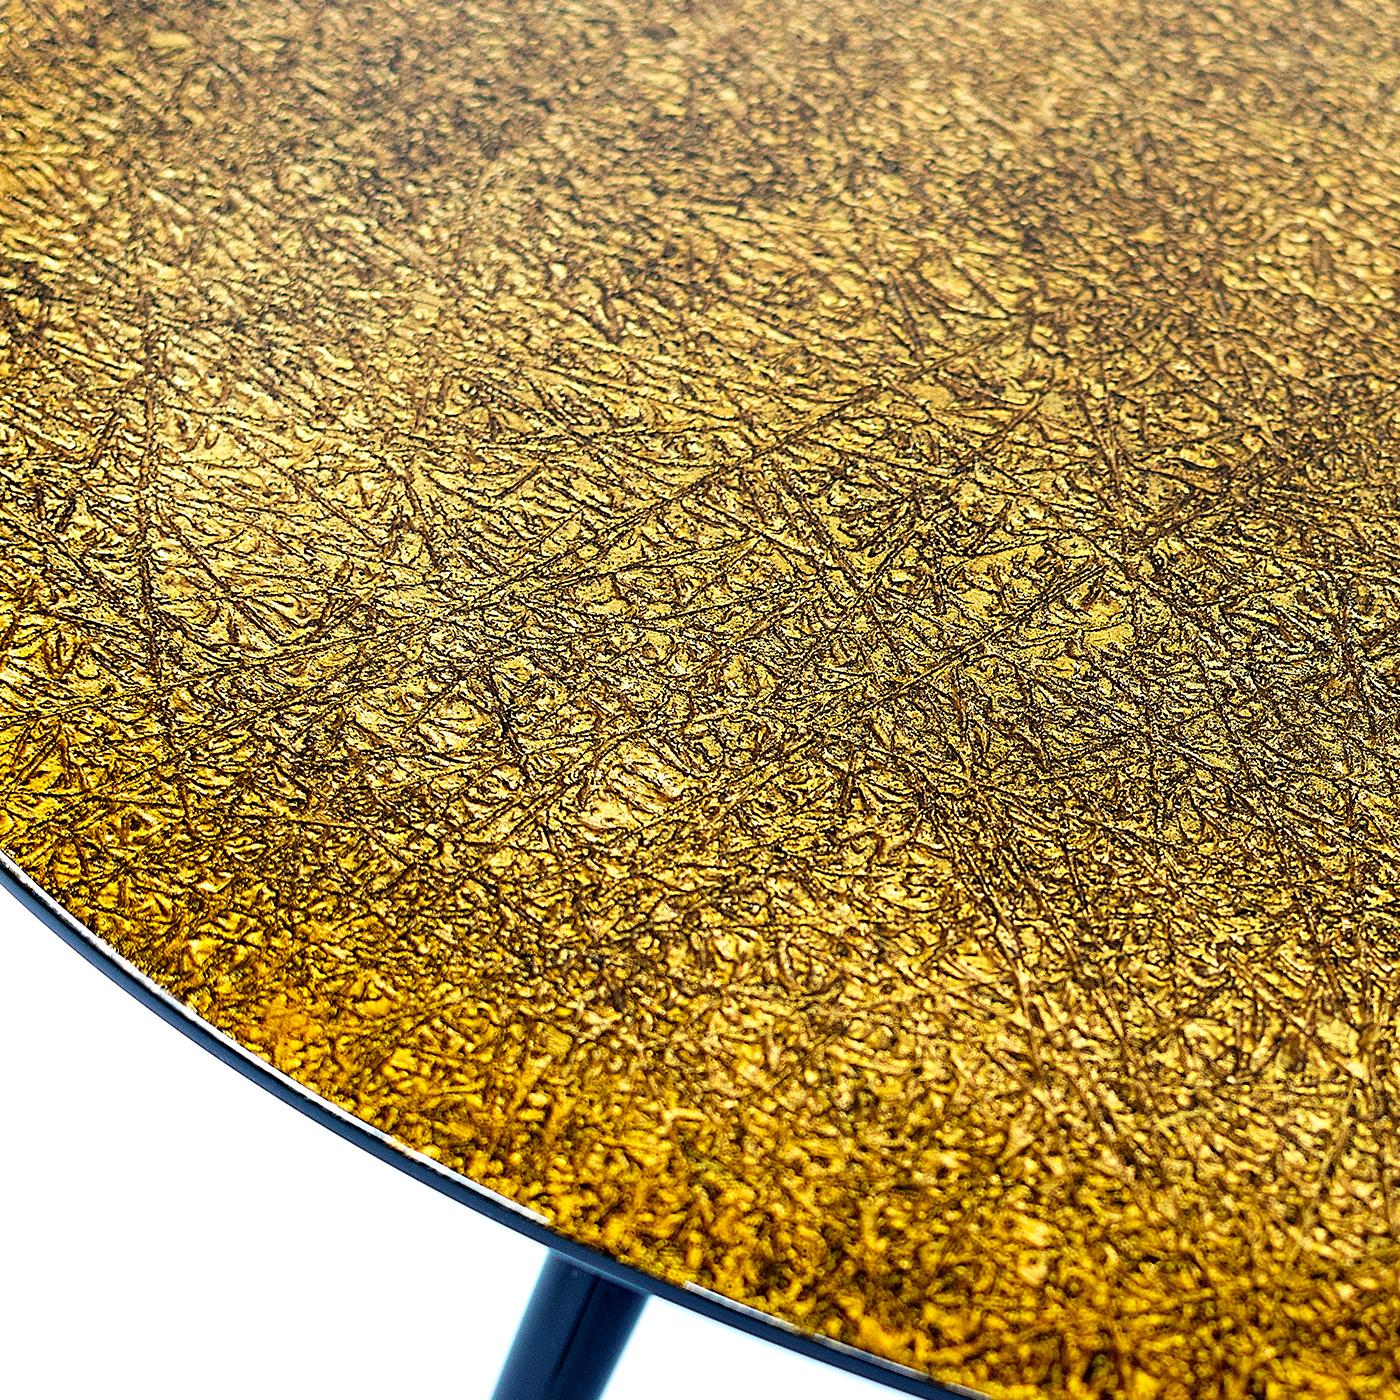 Subtilement sophistiquée dans ses détails, cette table basse ovale fusionne une silhouette midcentury avec des éléments décoratifs industriels pour conférer une présence distinctive à tout intérieur. Conçu par G. Ventura, le cadre en bois laqué noir